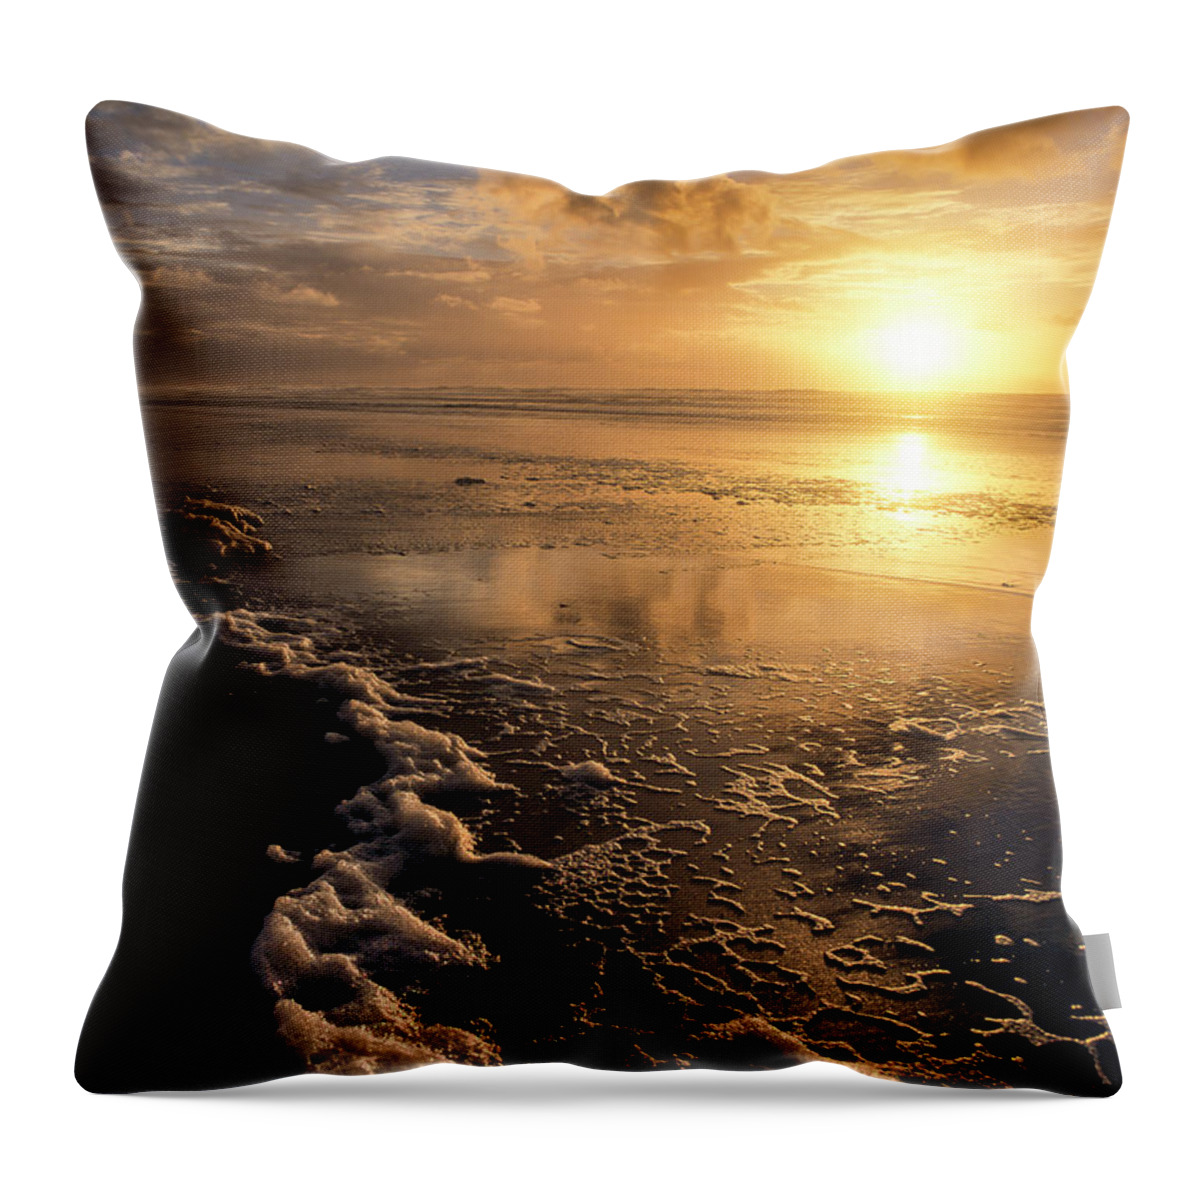 Beach Throw Pillow featuring the photograph Sunset Umpqua Beach by Robert Potts